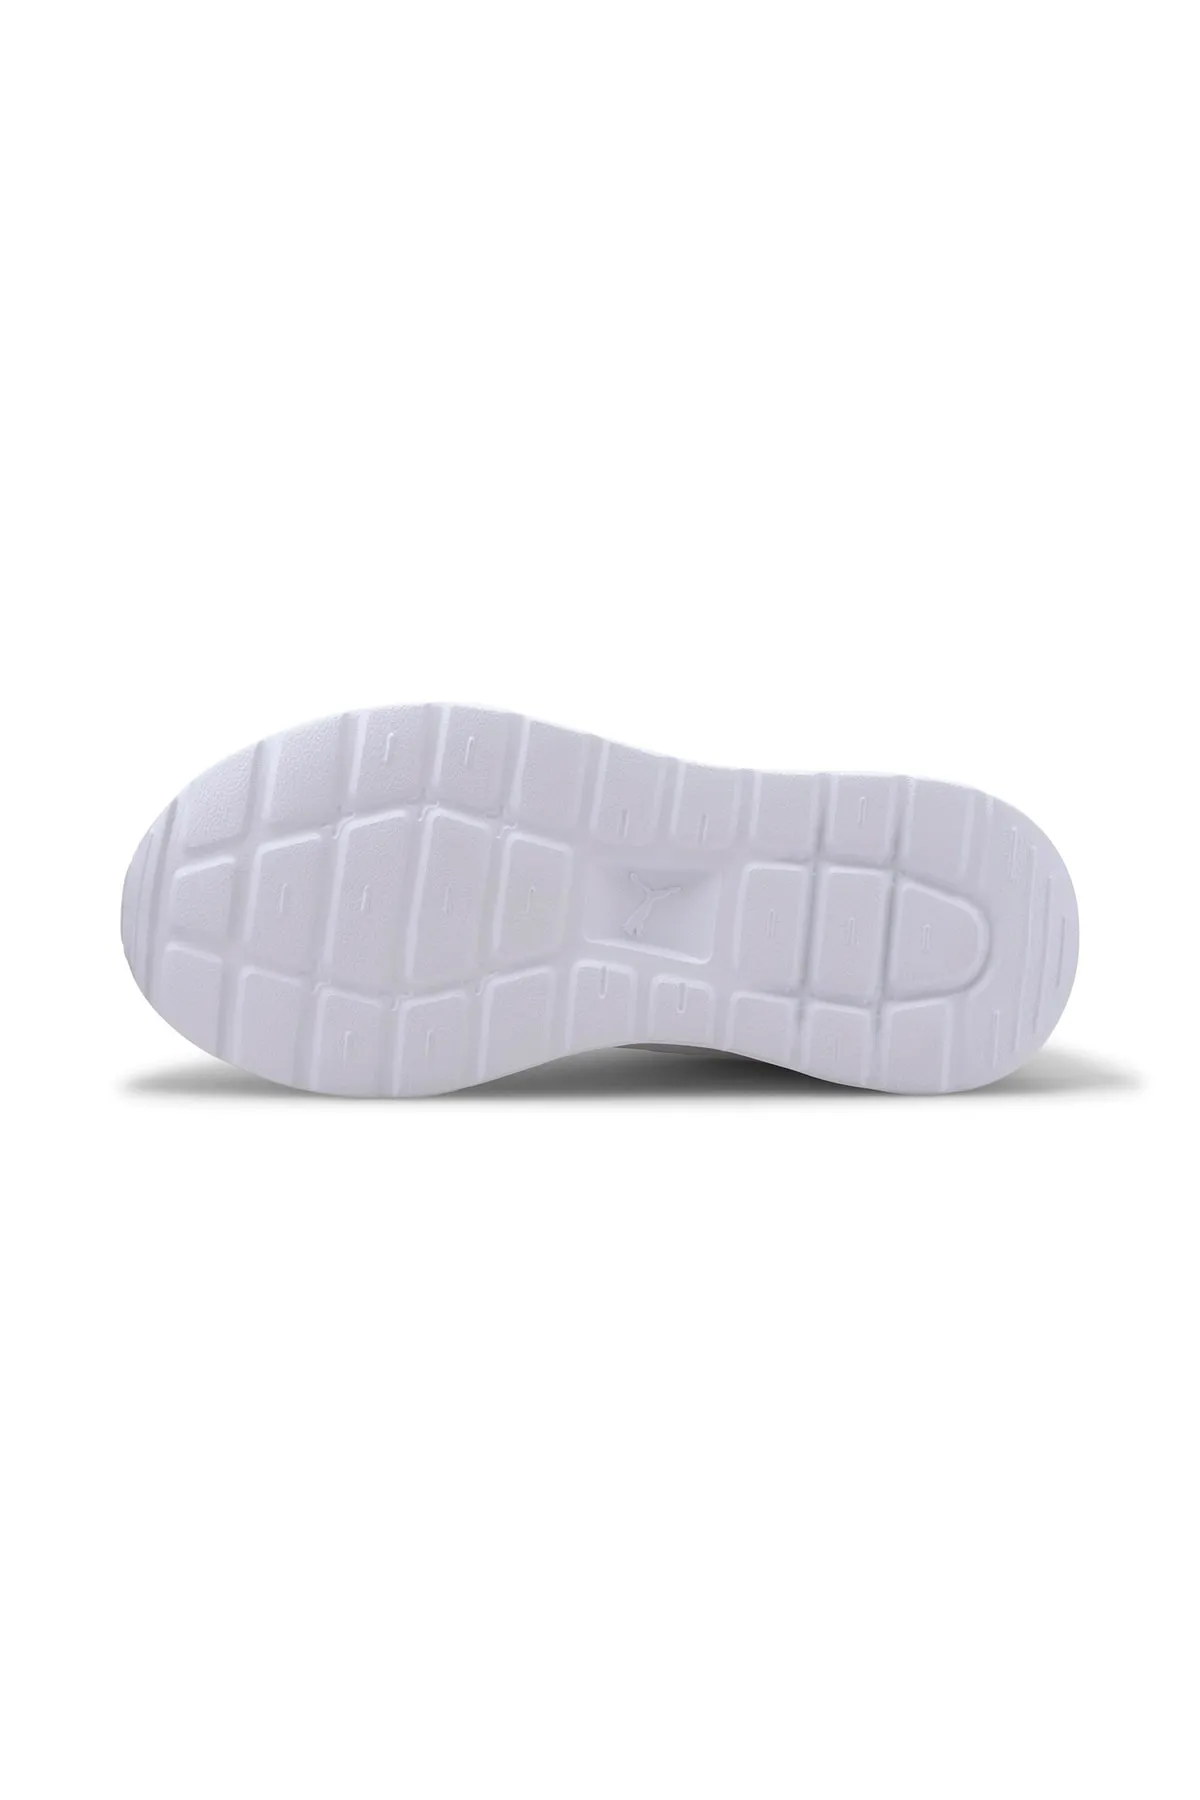 Kadın Spor Ayakkabı 37200-Beyaz - Thumbnail